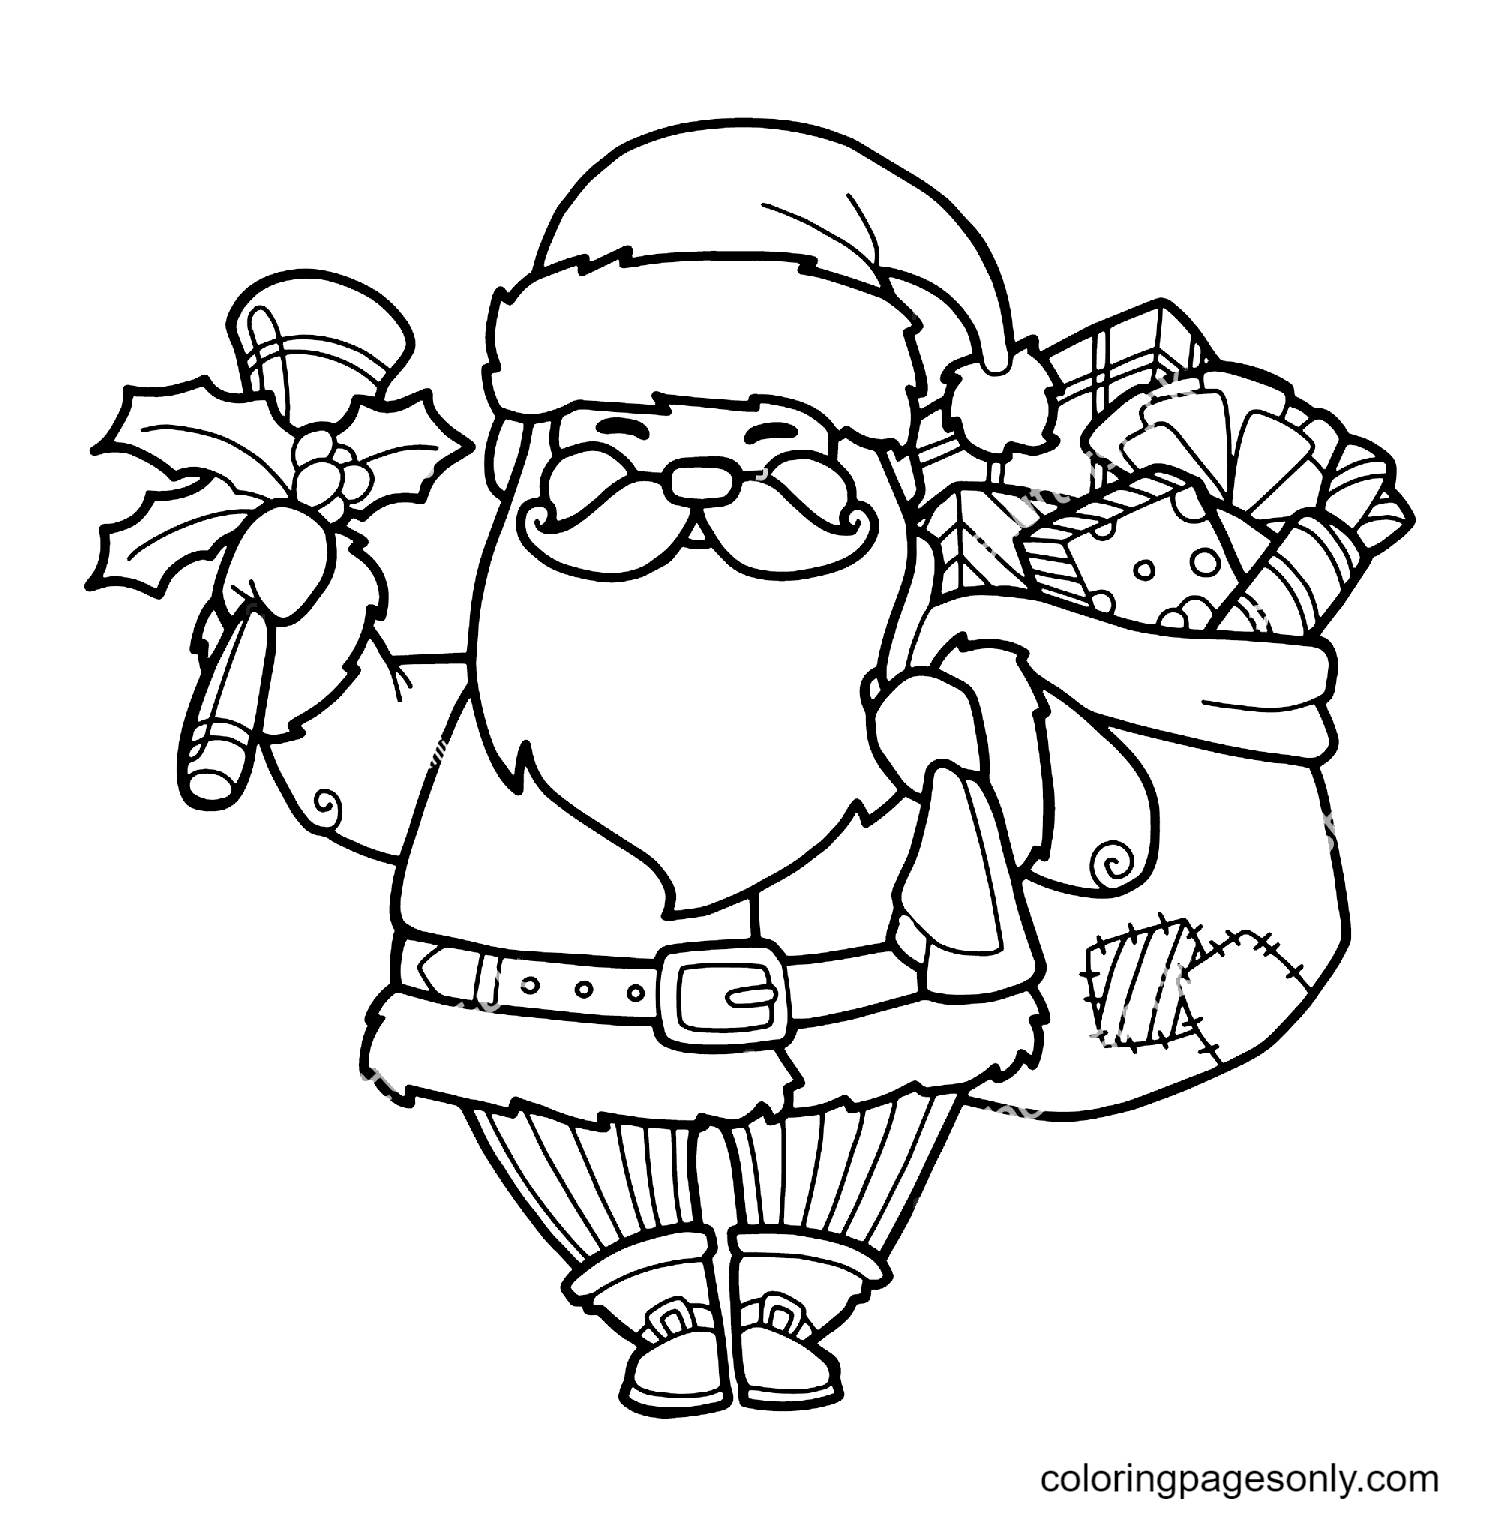 Weihnachtsmann mit Geschenken vom Weihnachtsmann